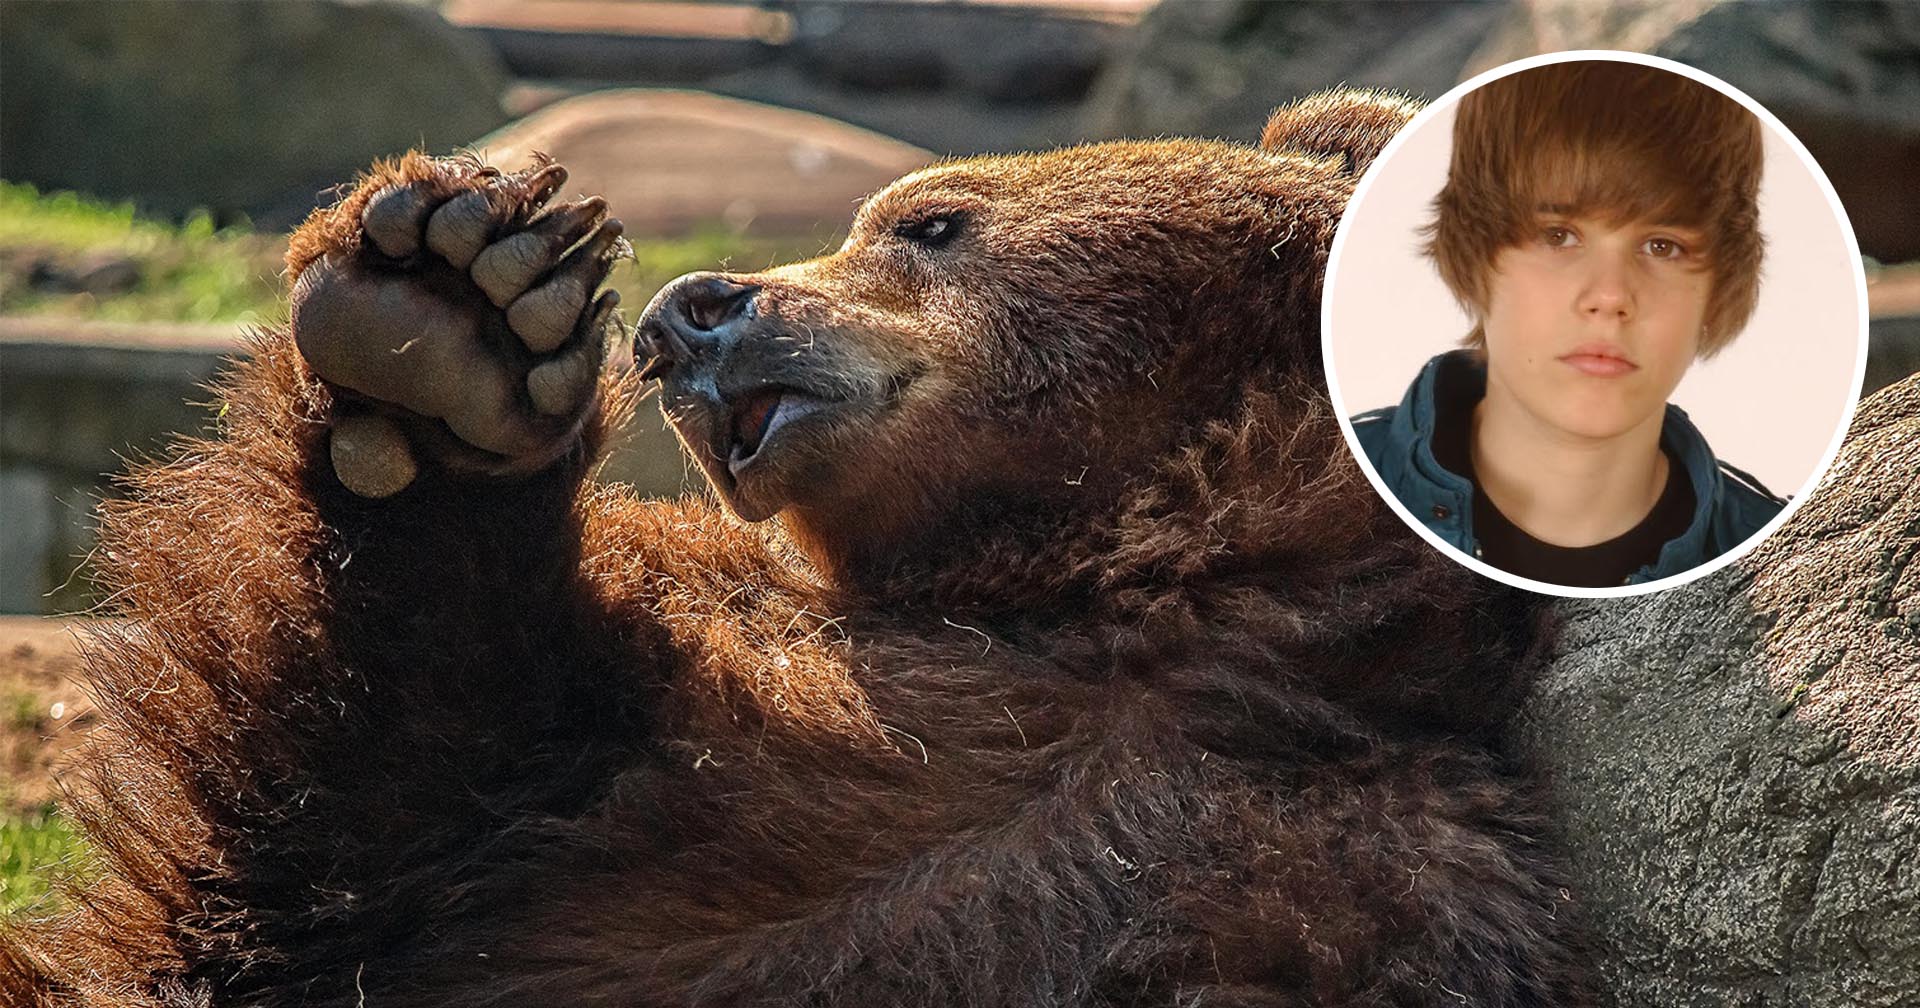 เพลง Baby ของ จัสติน บีเบอร์ ช่วยชีวิตชายจากการถูกหมีโจมตี